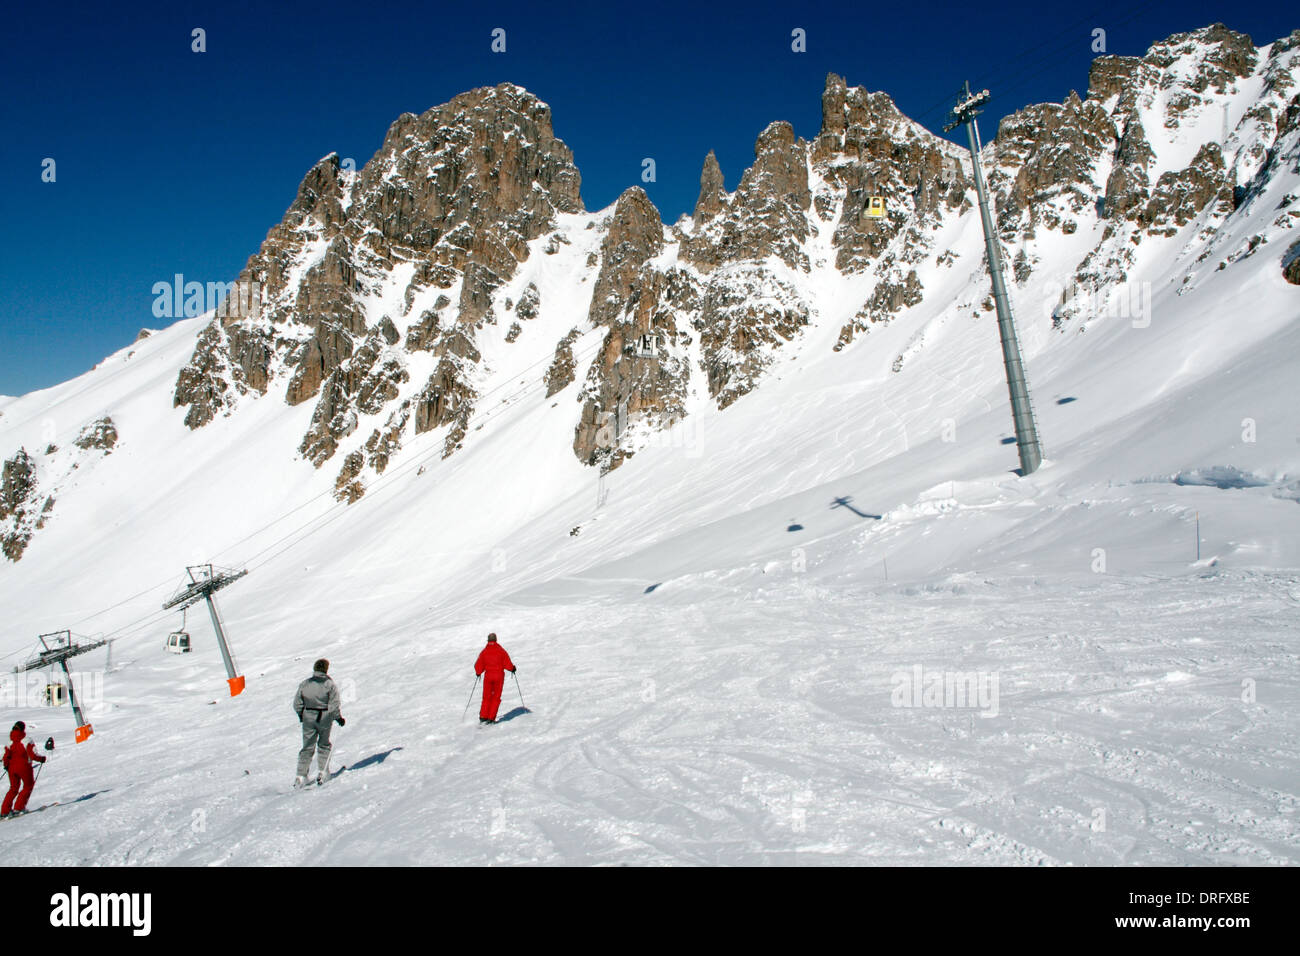 Winter sports, snow, ski, mountain, in the Three Valleys Domain, Tooth Burgin 2739 m in Meribel Mottaret, Savoie, France Stock Photo